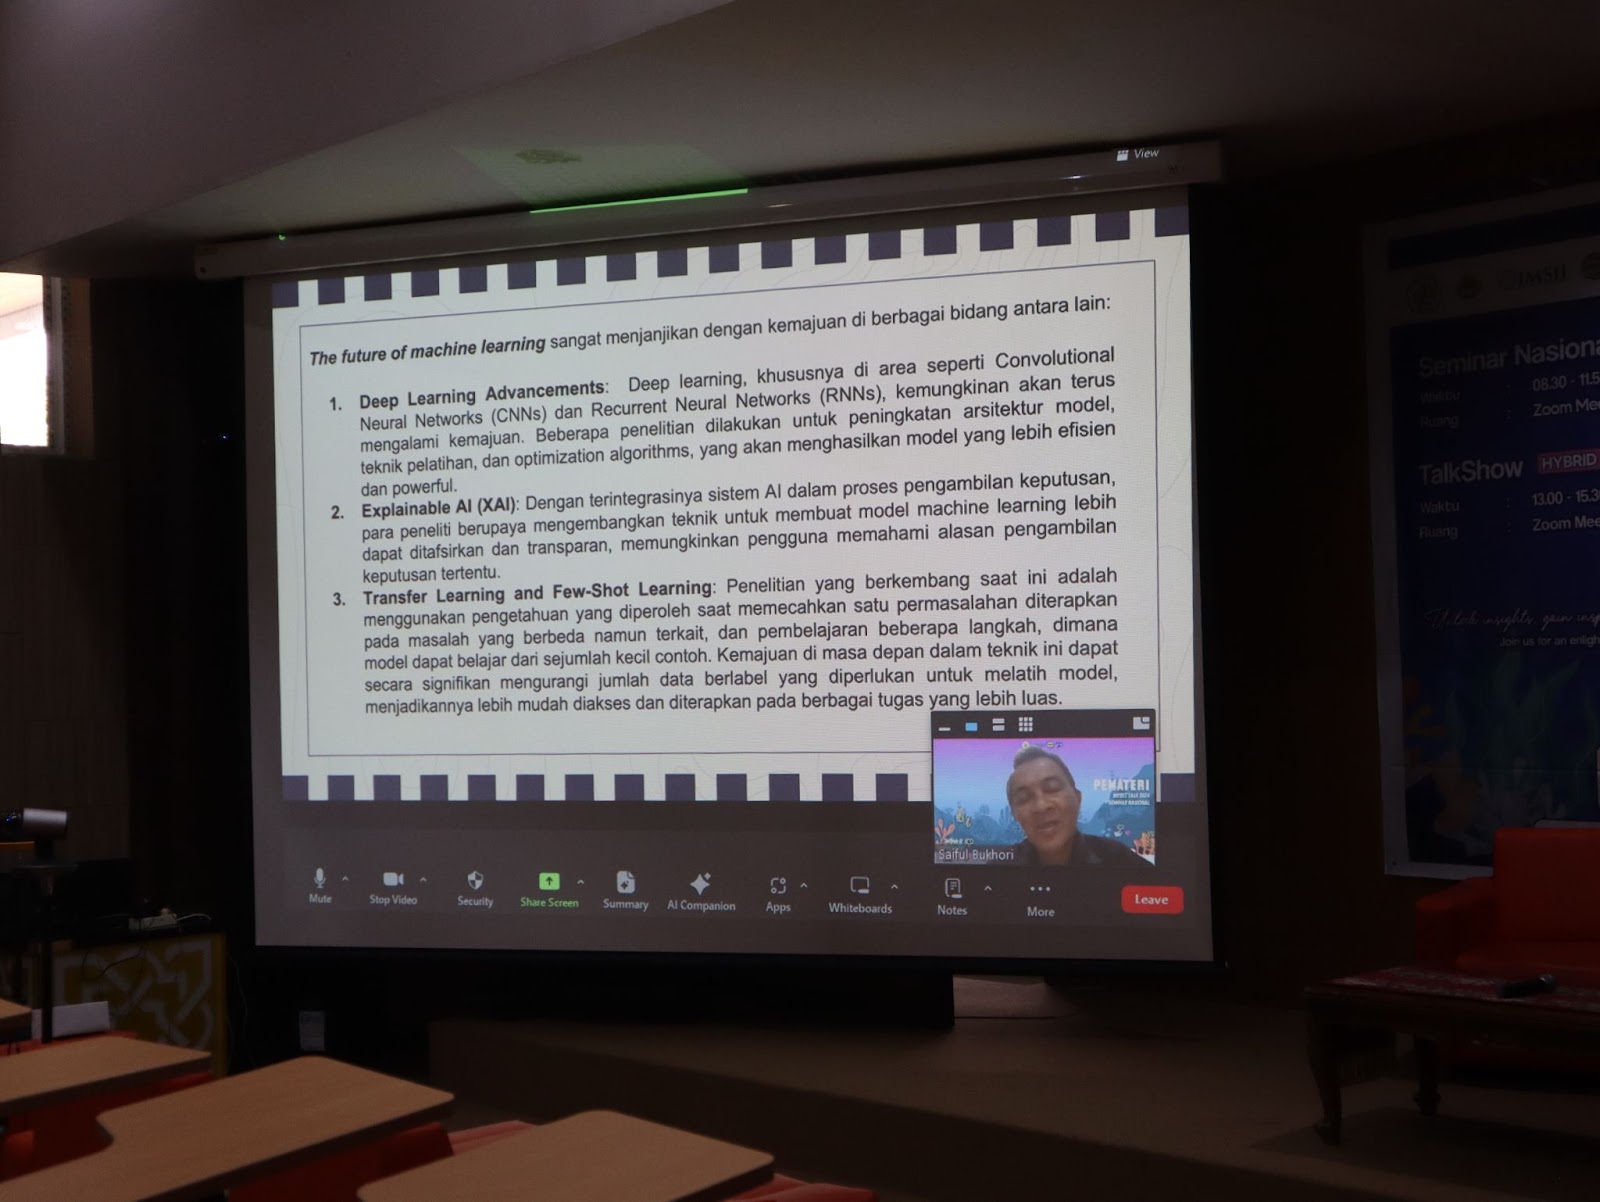 Sile presentasi yang disampaikan Prof Saiful